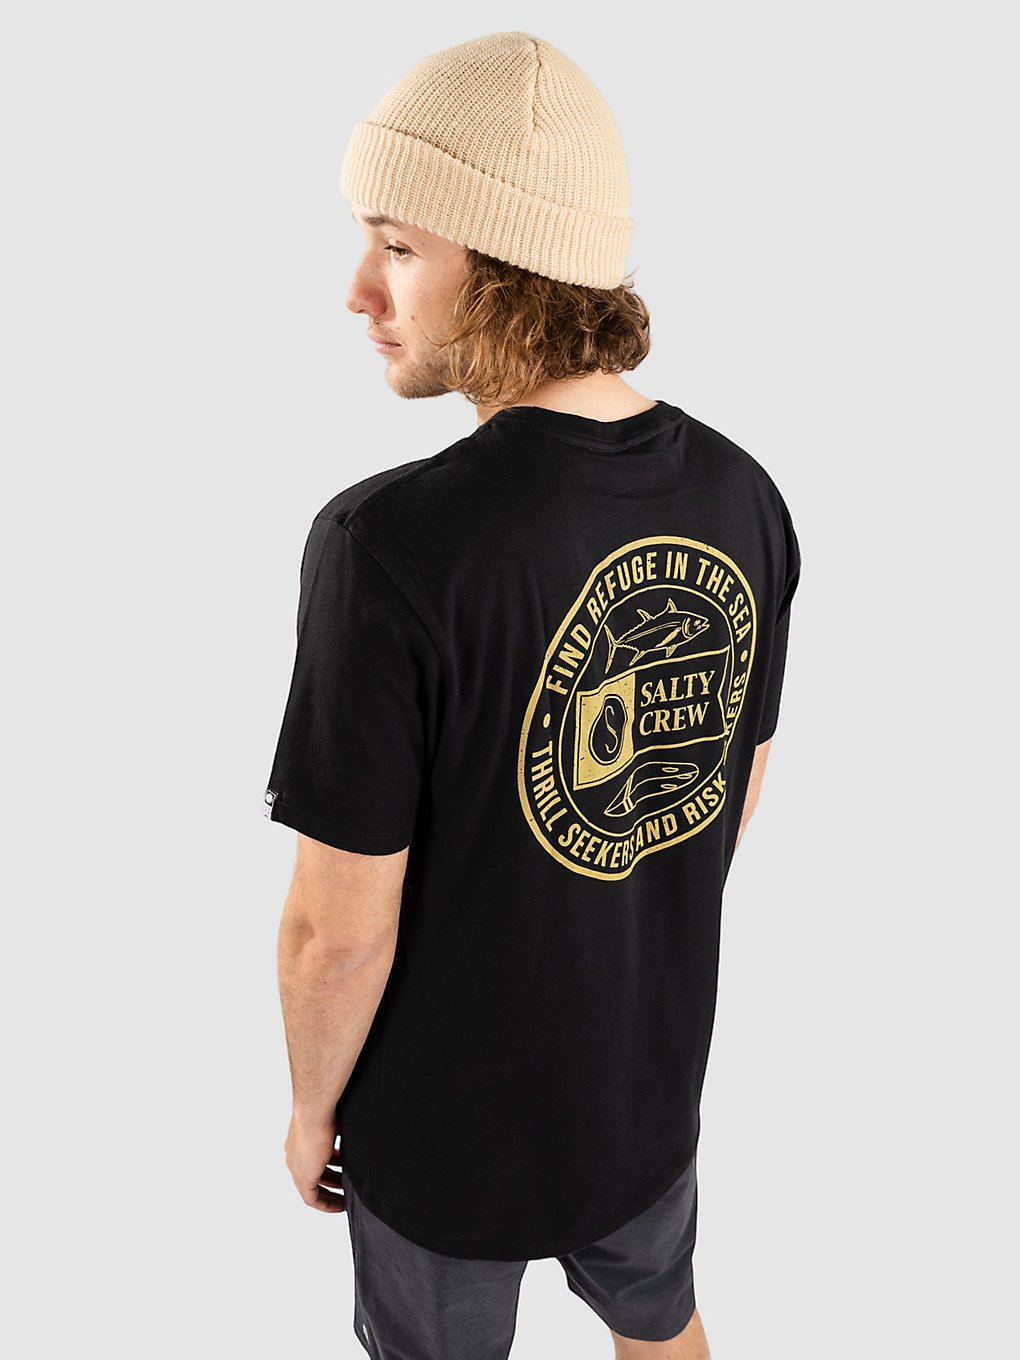 Salty Crew Legends Premium T-Shirt black kaufen